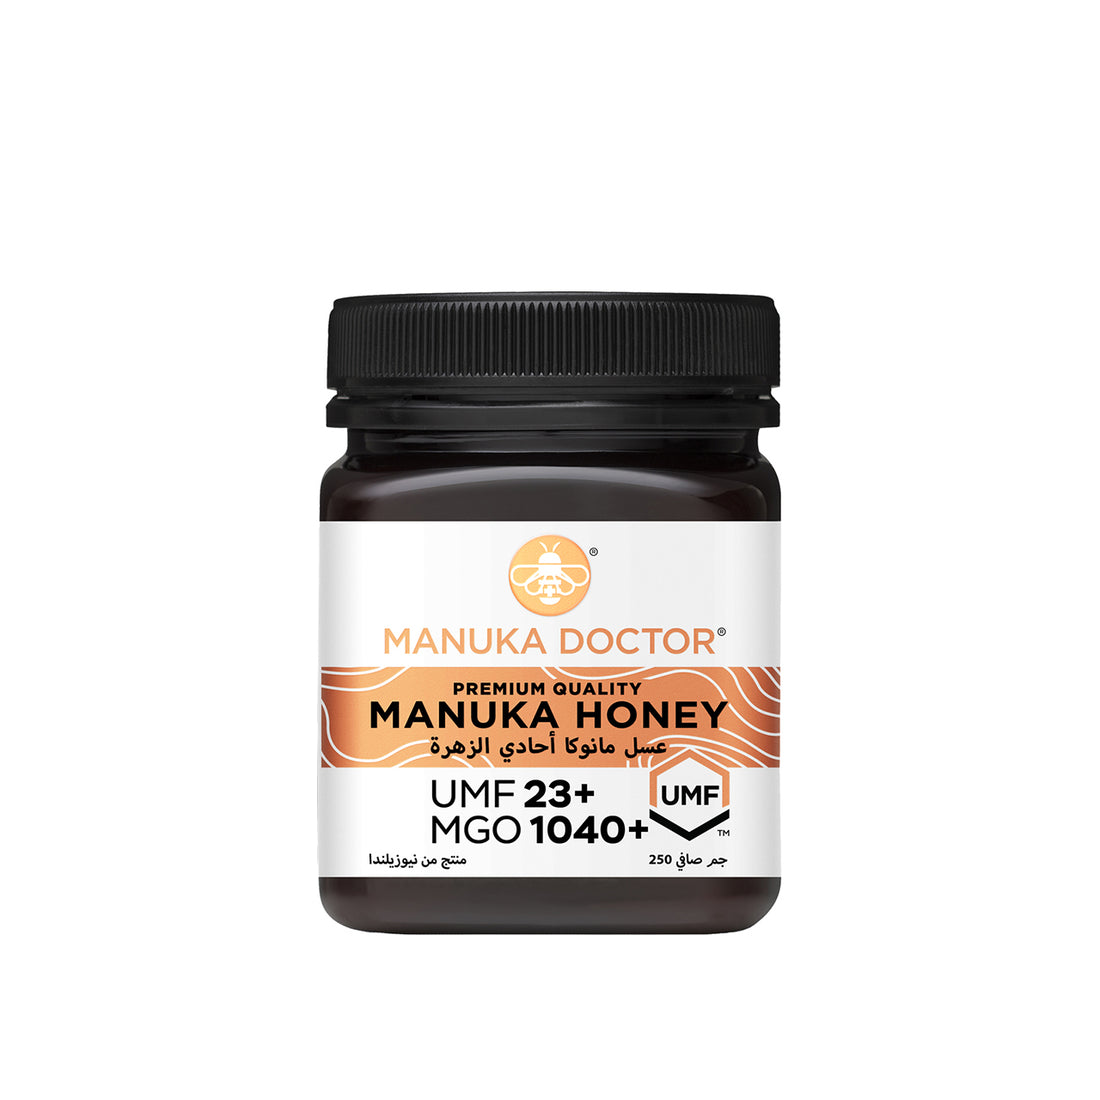 Manuka Doctor Manuka Honey 250g UMF 23+ MGO 1040+